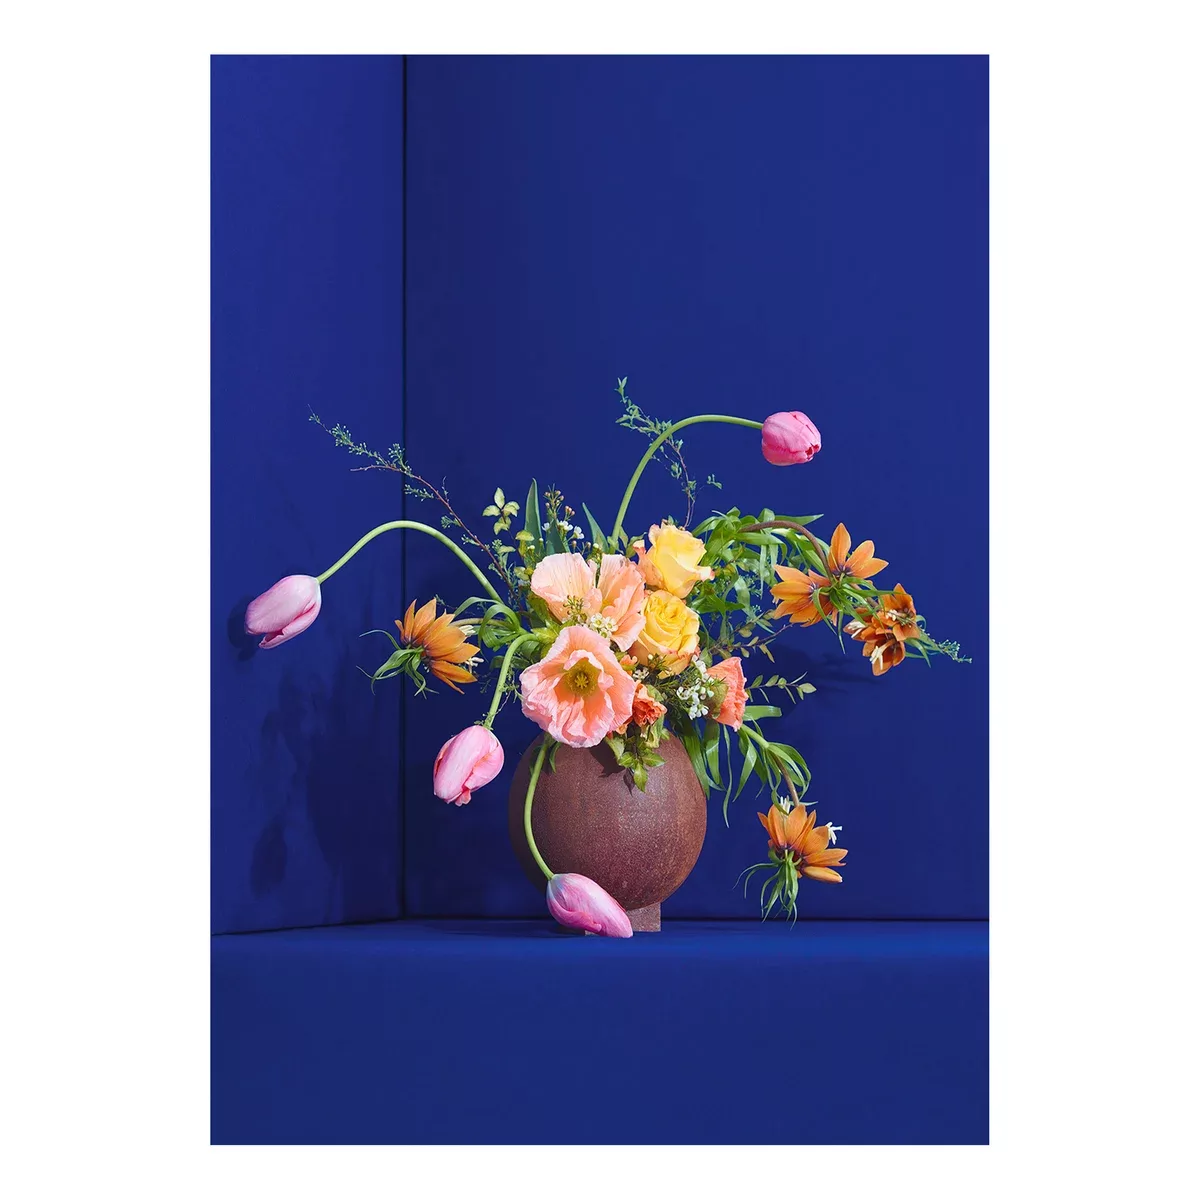 Paper Collective - Blomst 01 Blue Kunstdruck 50x70cm - blau, pink, grün, ge günstig online kaufen